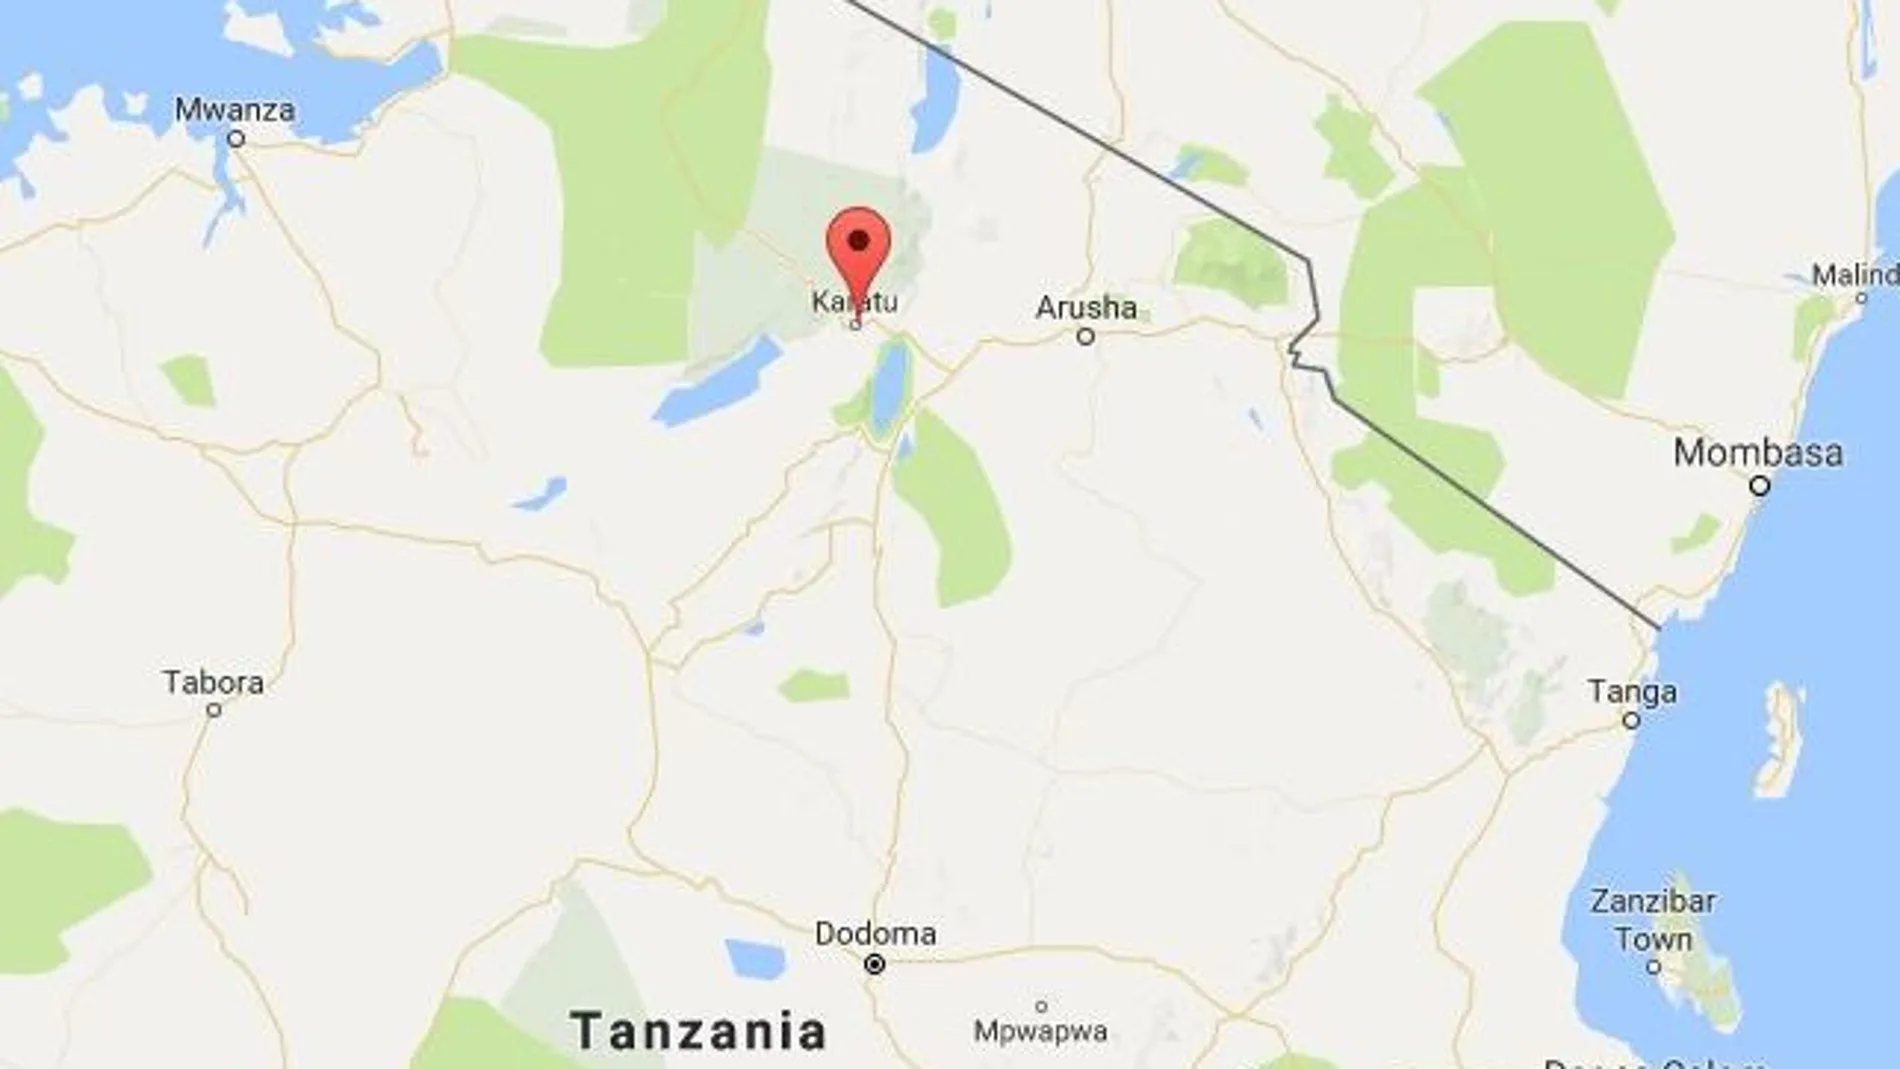 El accidente ocurrió esta mañana cerca de la localidad de Karatu, a unos 150 kilómetros de Arusha